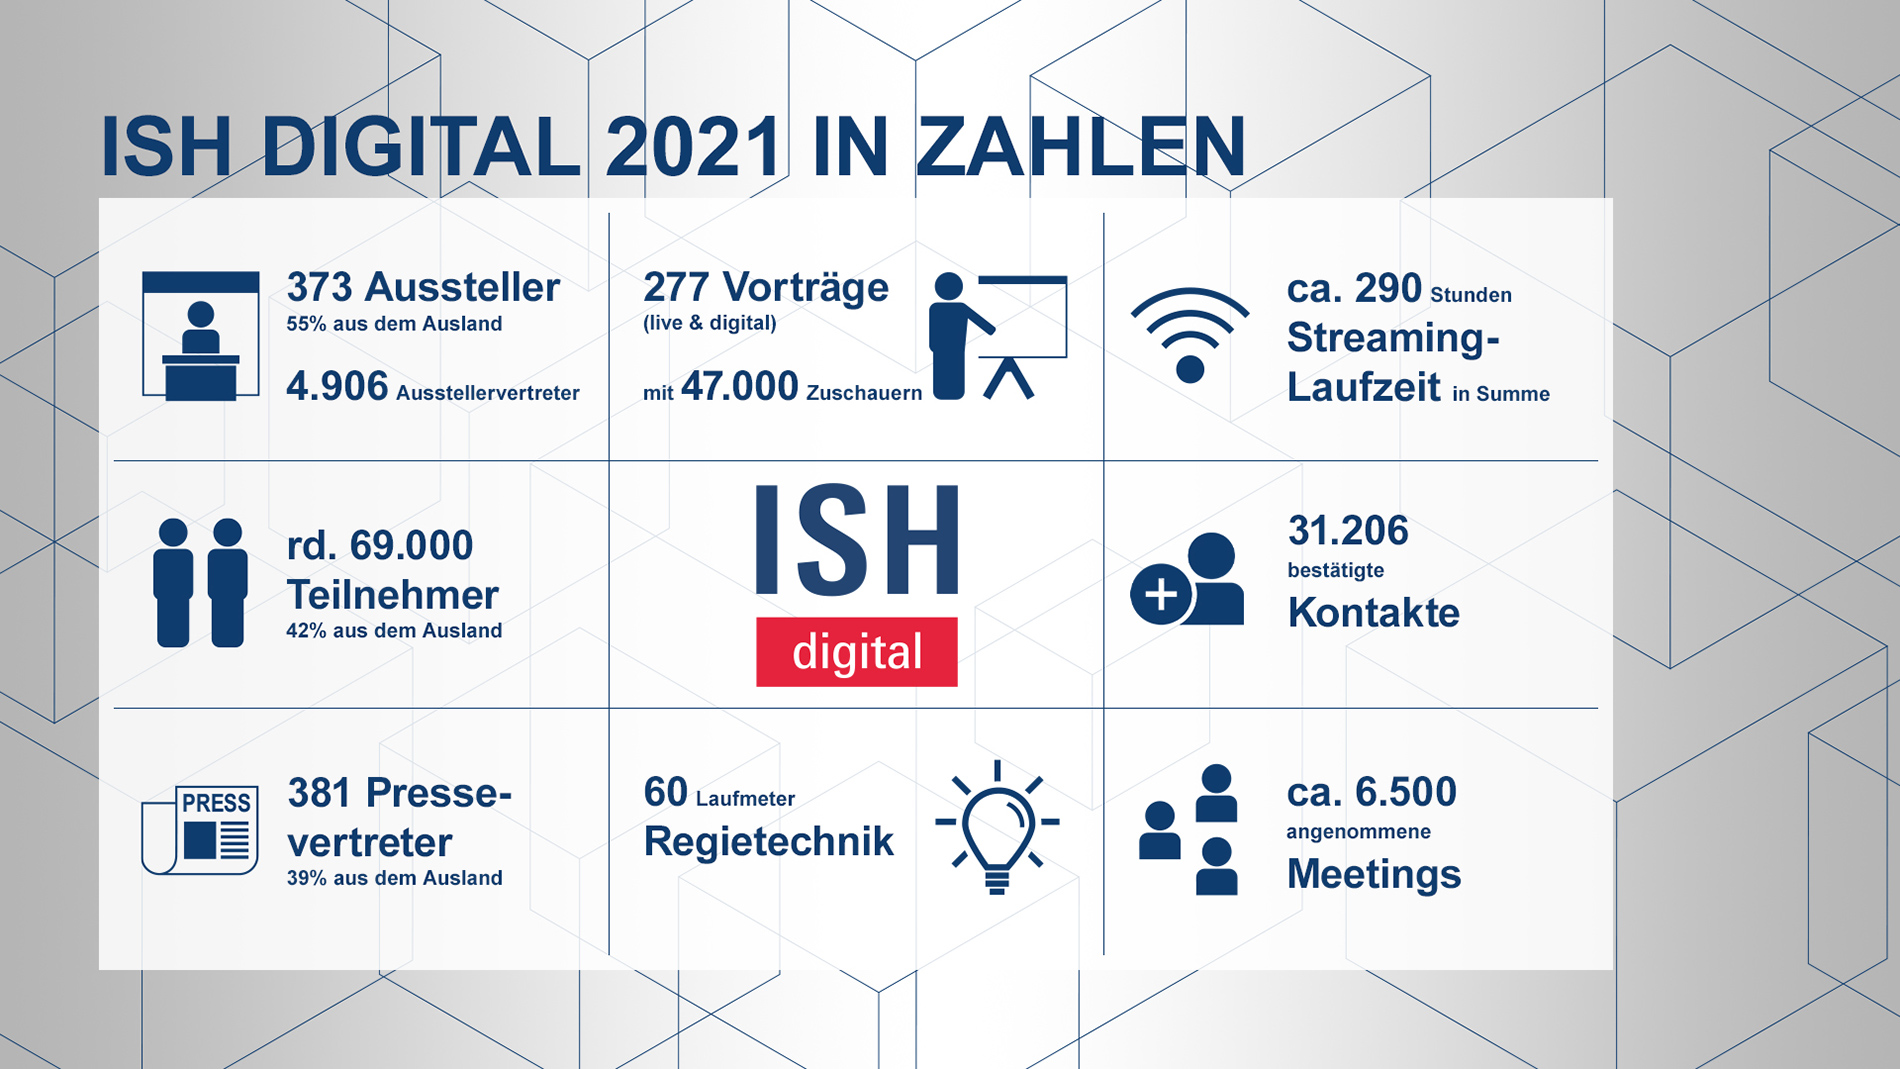 Daten und Fakten zur ISH digital 2021 I Quelle: Messe Frankfurt Exhibition GmbH